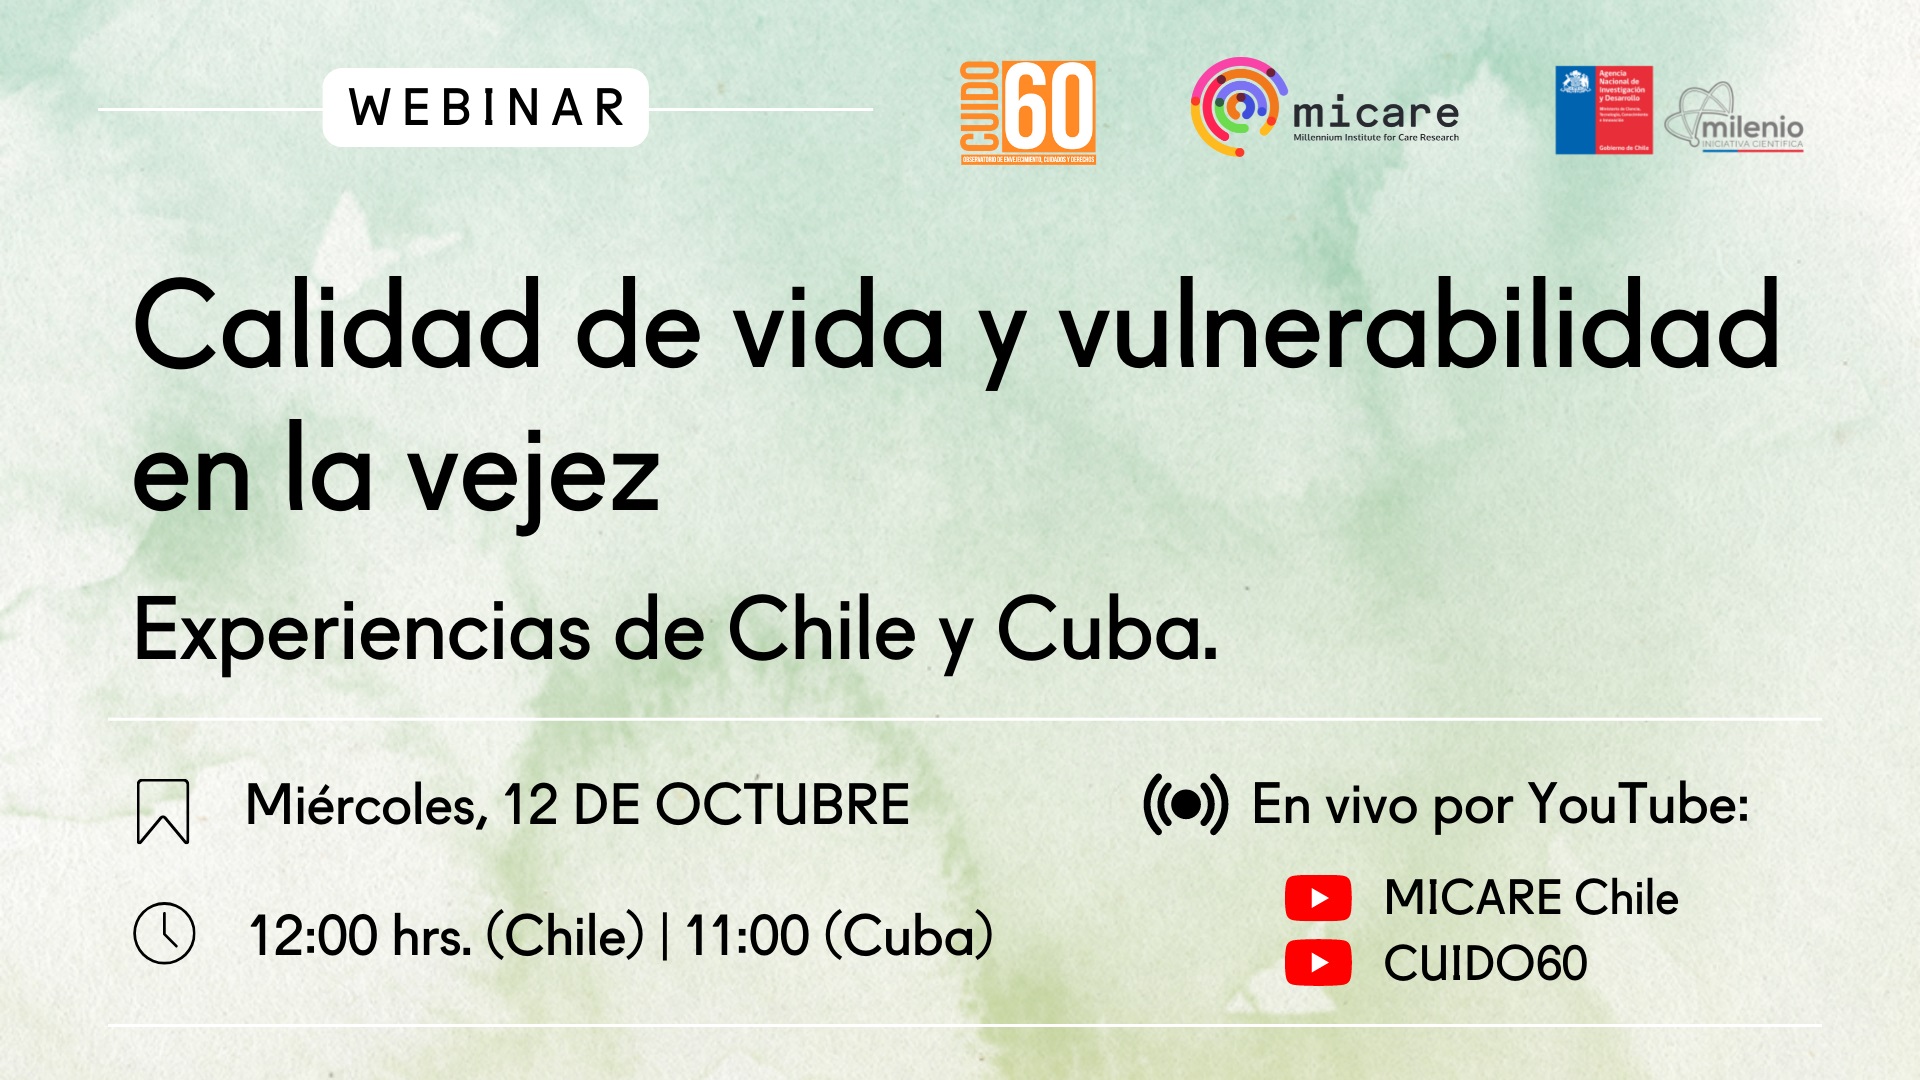 Webinar: Calidad de vida y vulnerabilidad en la vejez. Experiencias de Chile y Cuba. Miércoles, 12 DE OCTUBRE. 12:00 hrs. (Chile) | 11:00 (Cuba). En vivo por YouTube, por los canales: MICARE Chile y CUIDO60.